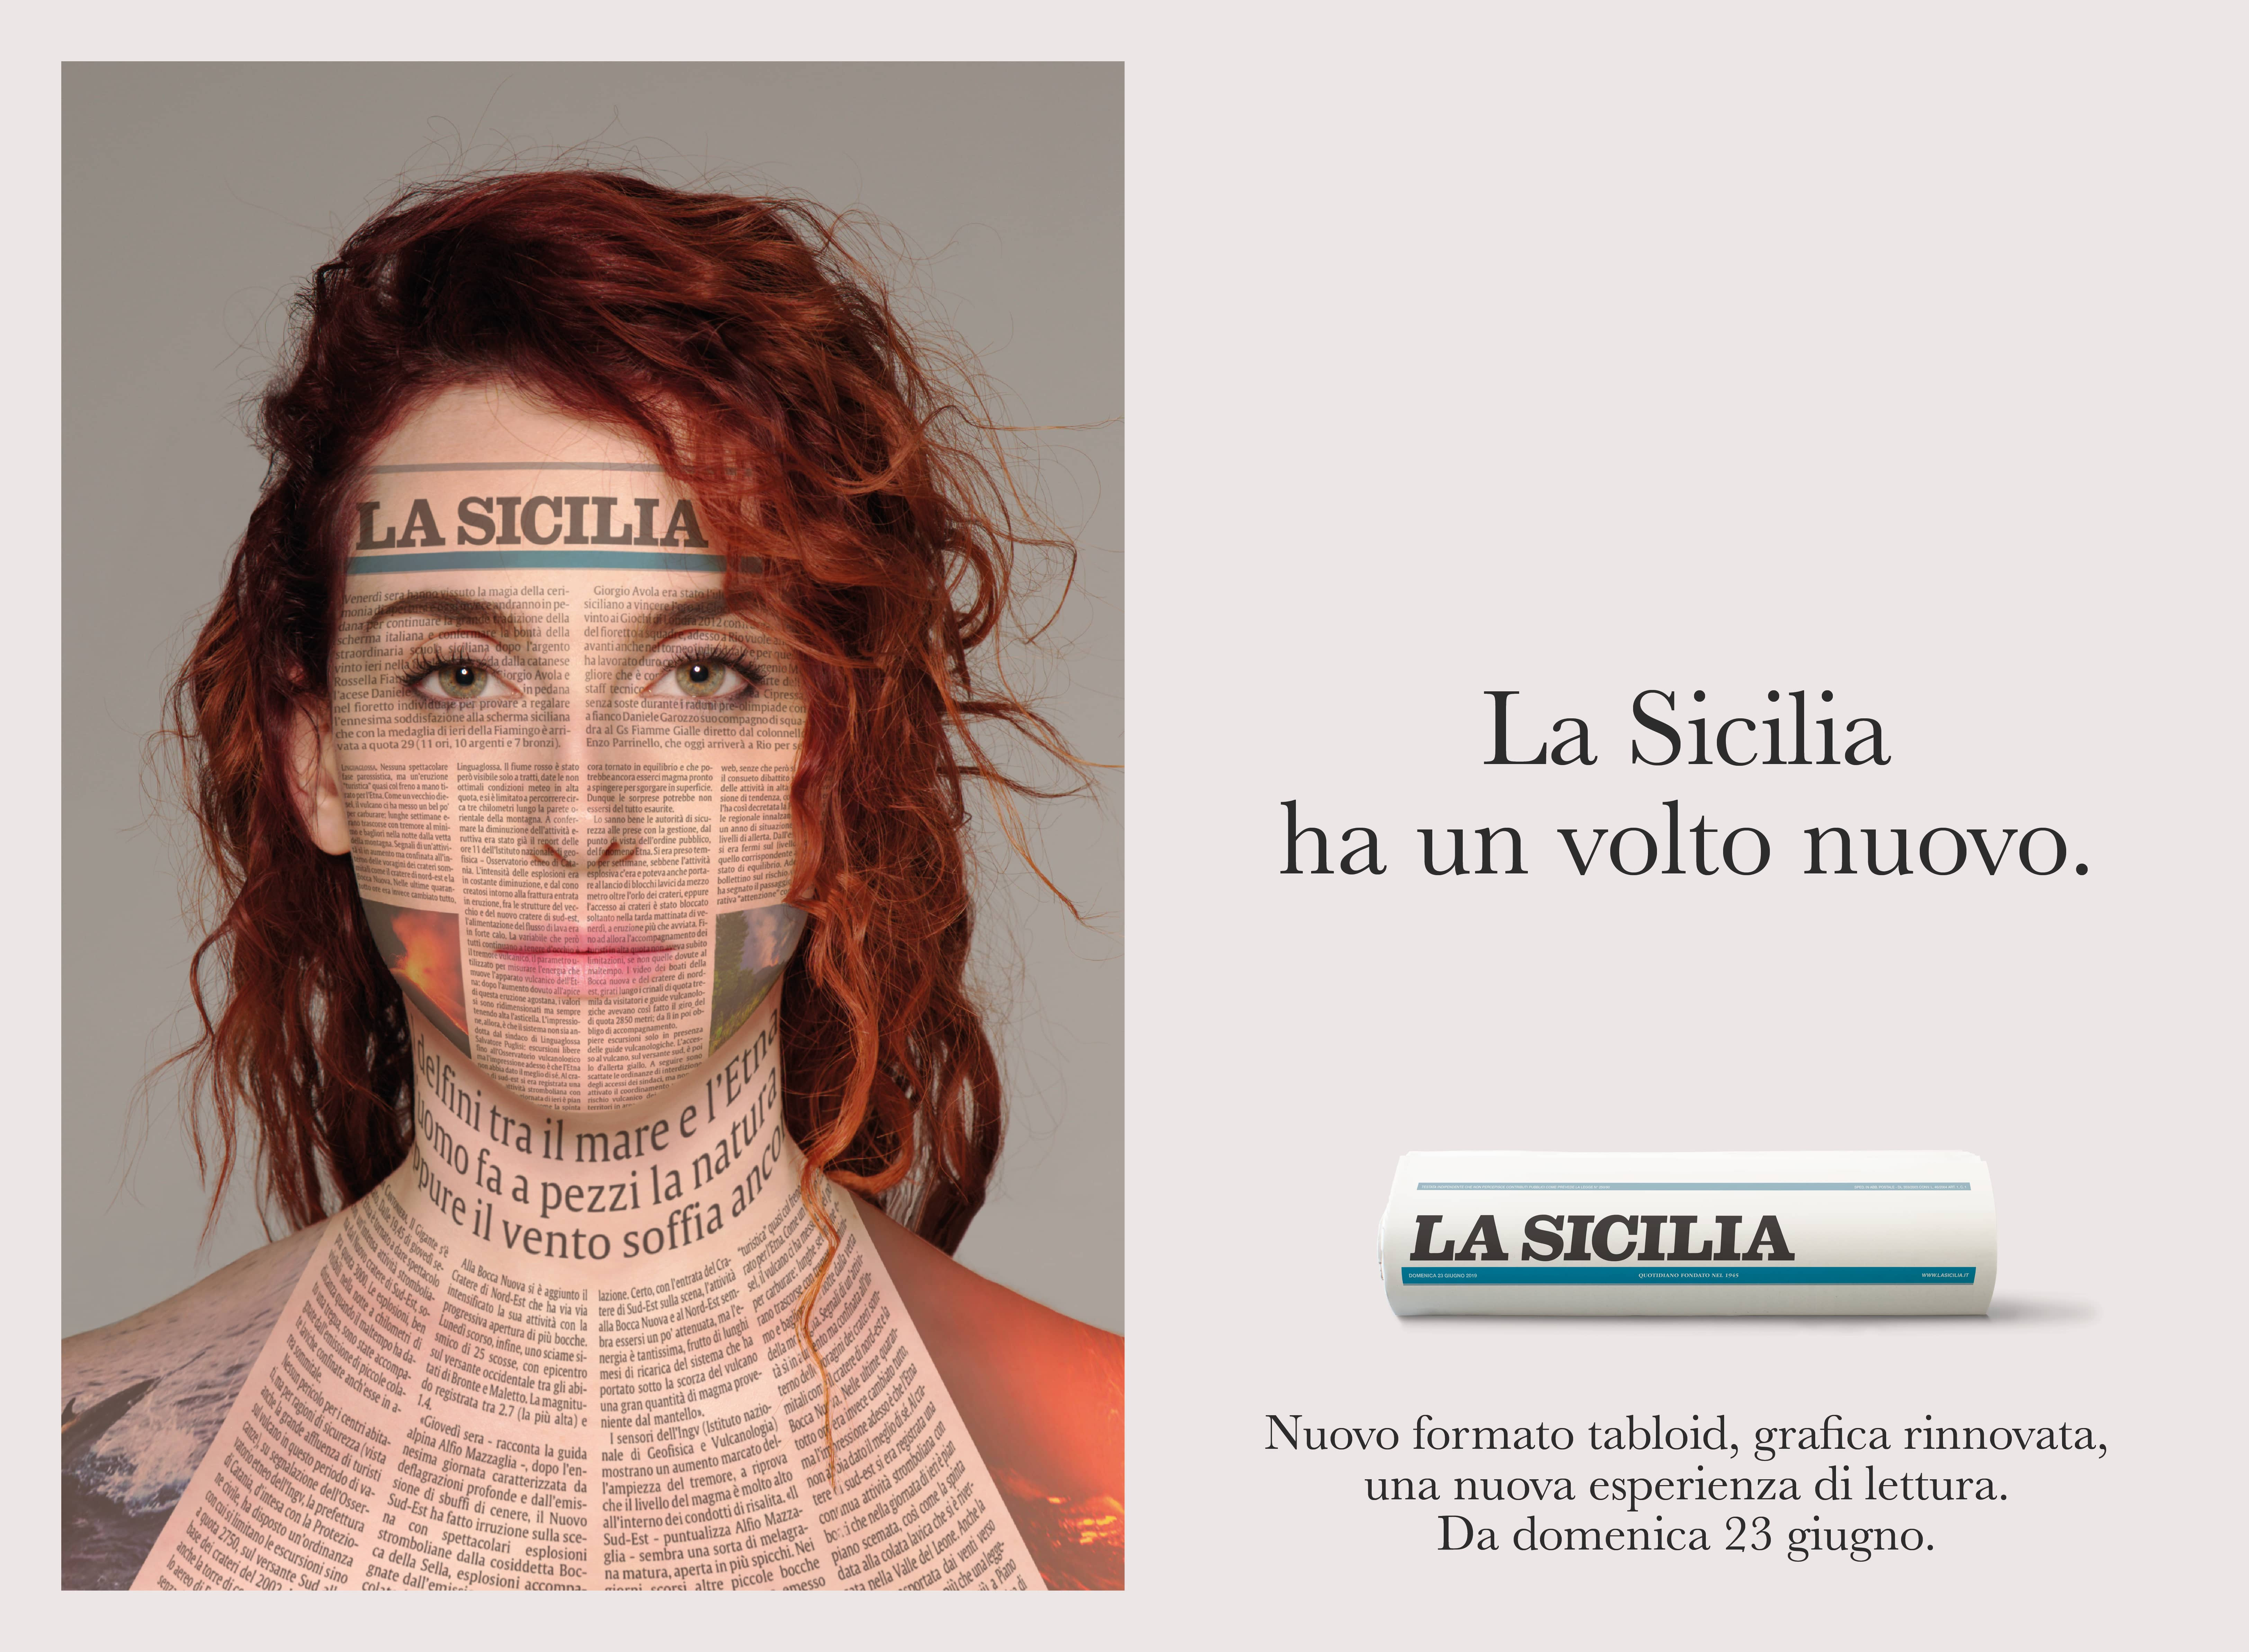 La Sicilia sceglie Gitto/Battaglia_22 per comunicare il lancio del nuovo formato tabloid